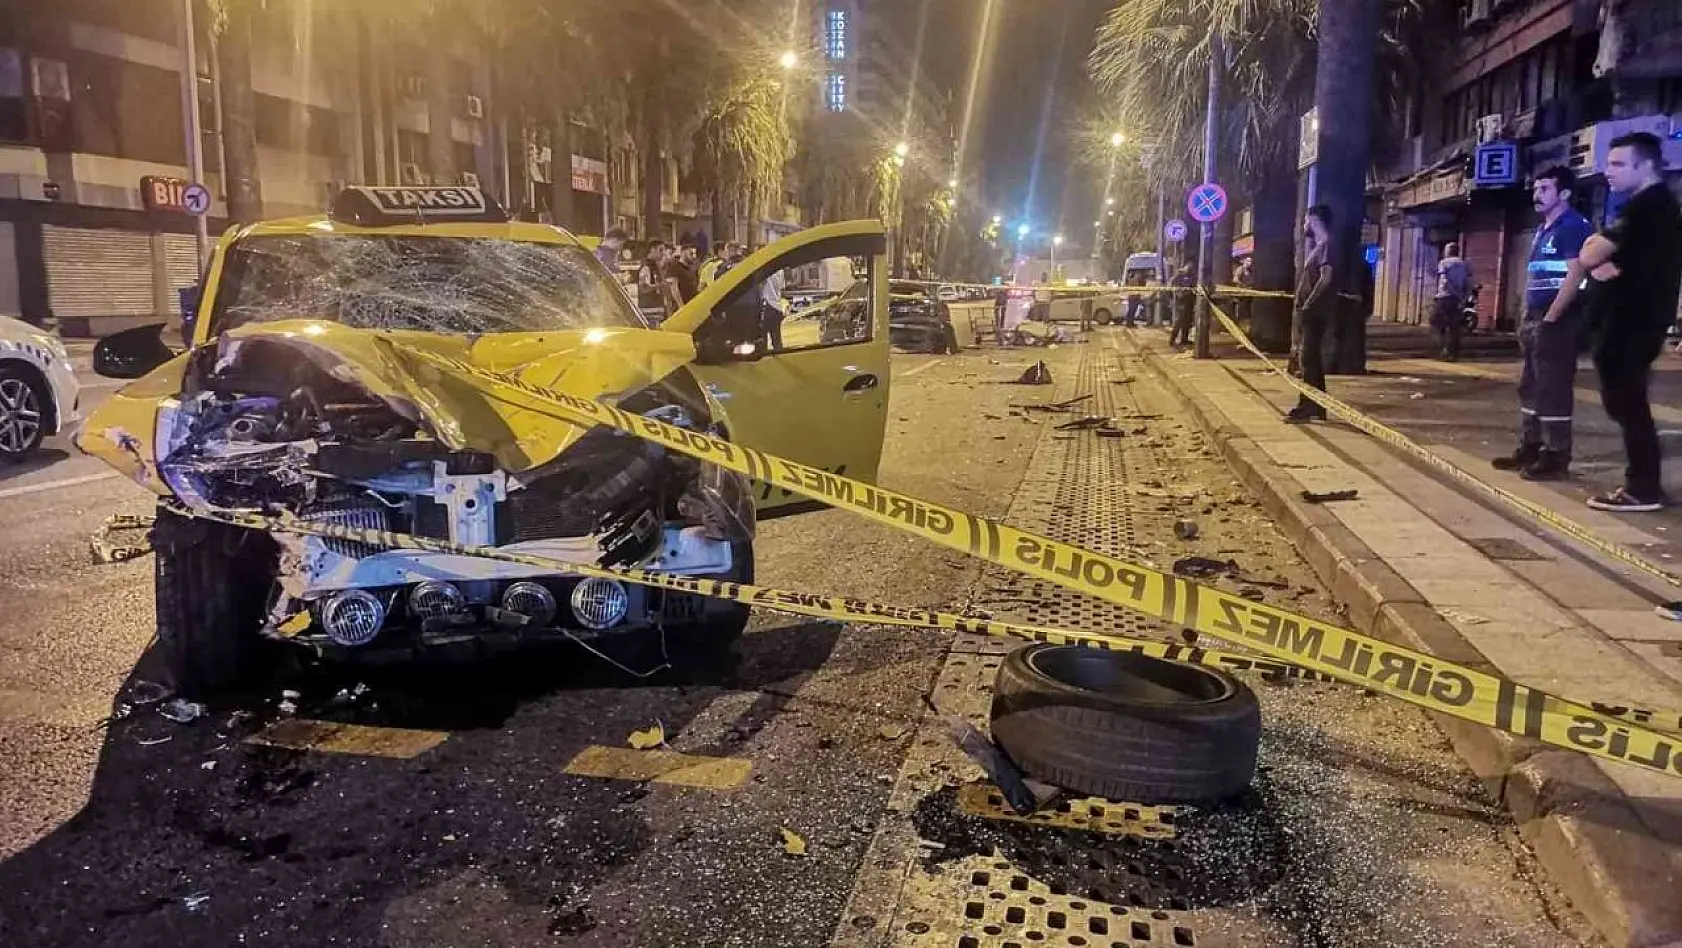 İzmir'de kontrolden çıkan taksi kağıt toplayacısına çarptı: 1 ölü, 1 yaralı